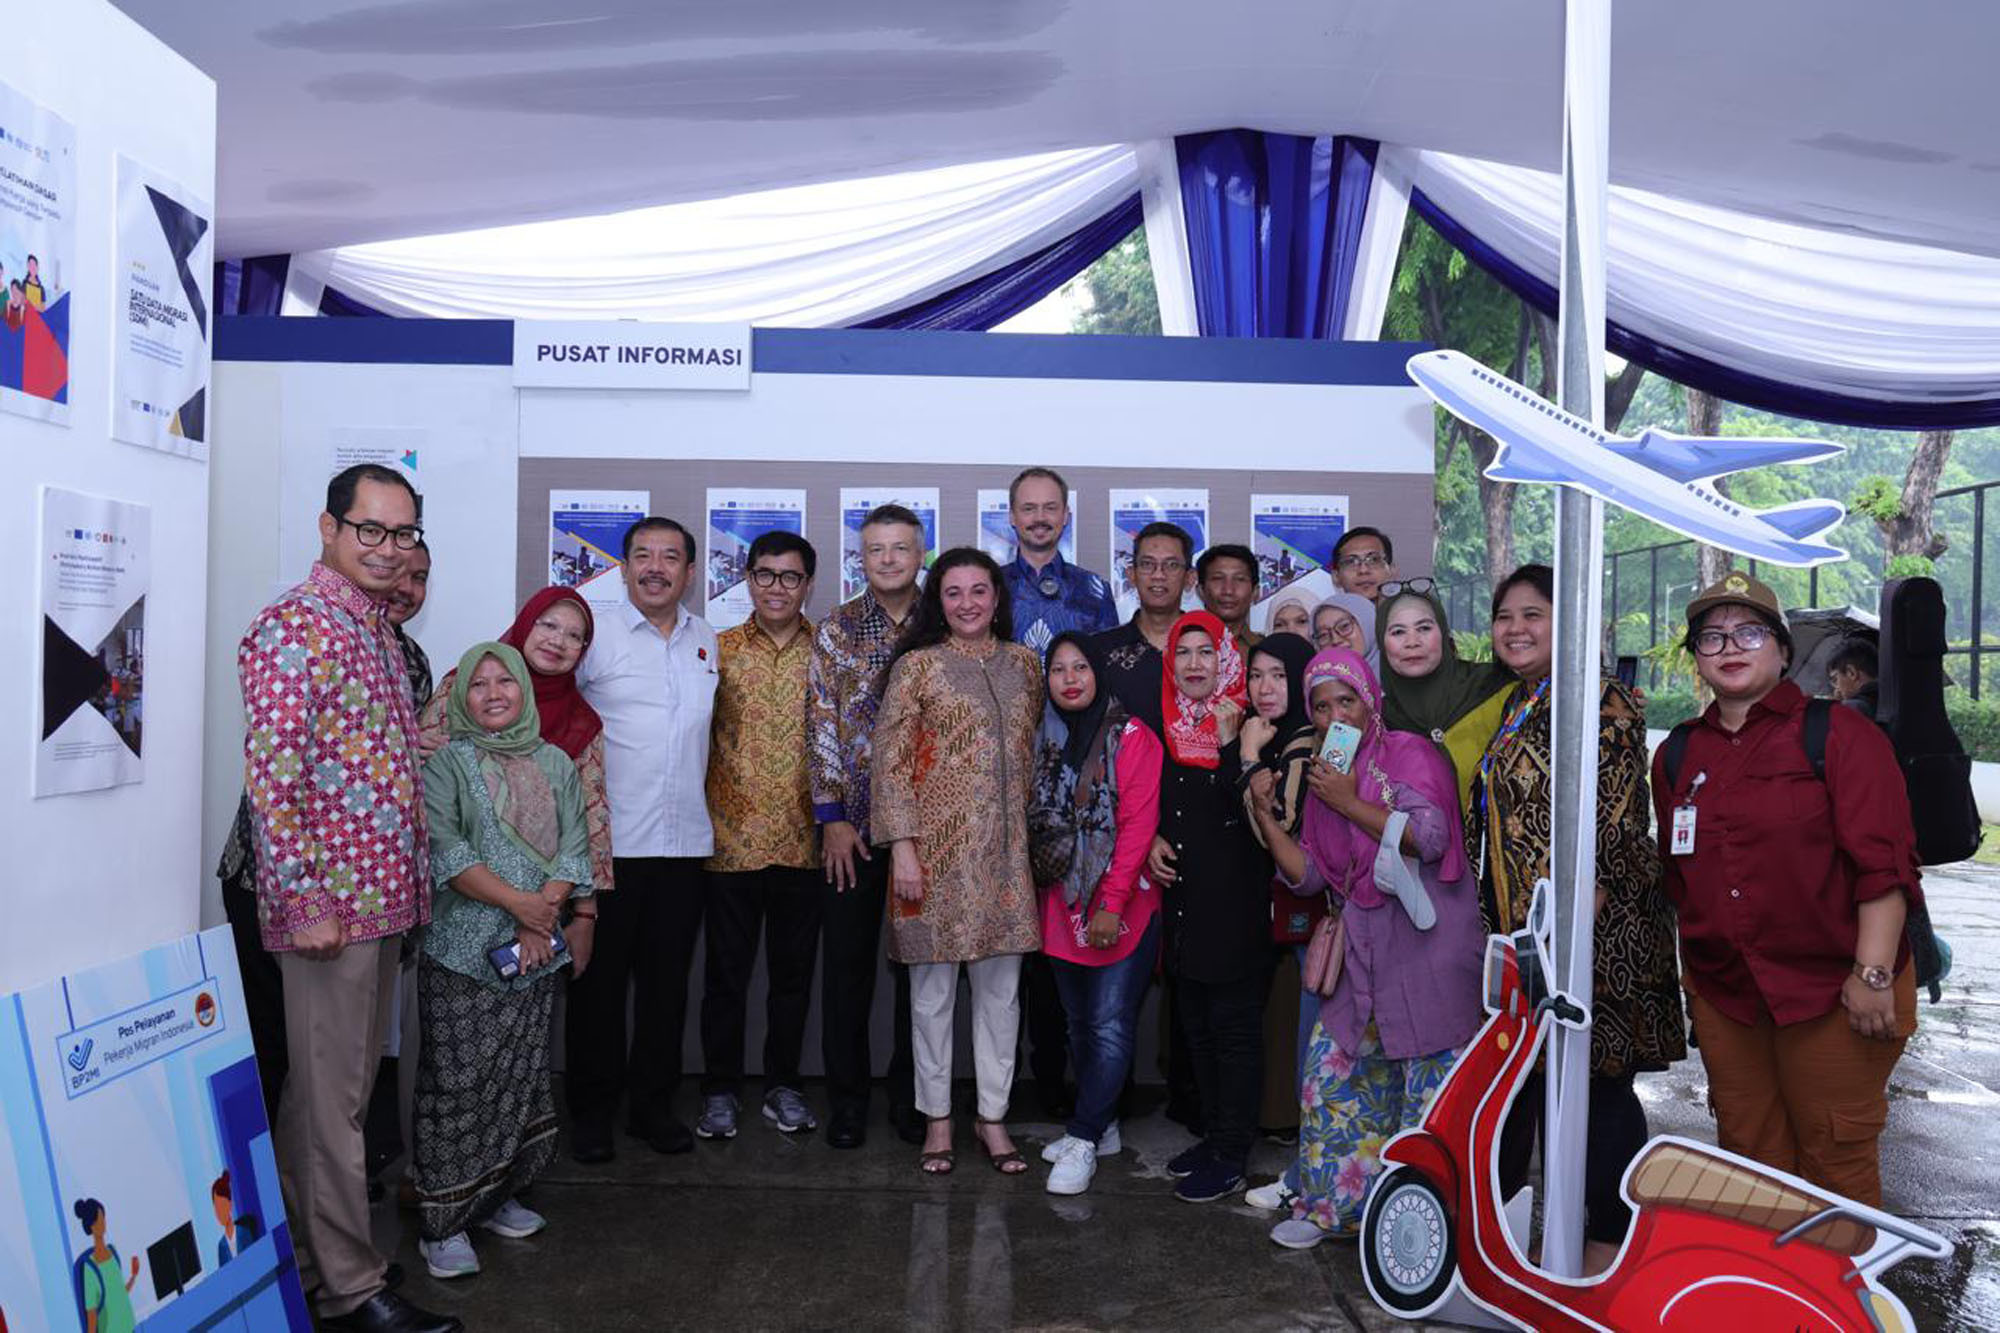 Bersama ILO, UNODC, dan Uni Eropa, Kemnaker Meluncurkan Program Protect Indonesia - JPNN.com